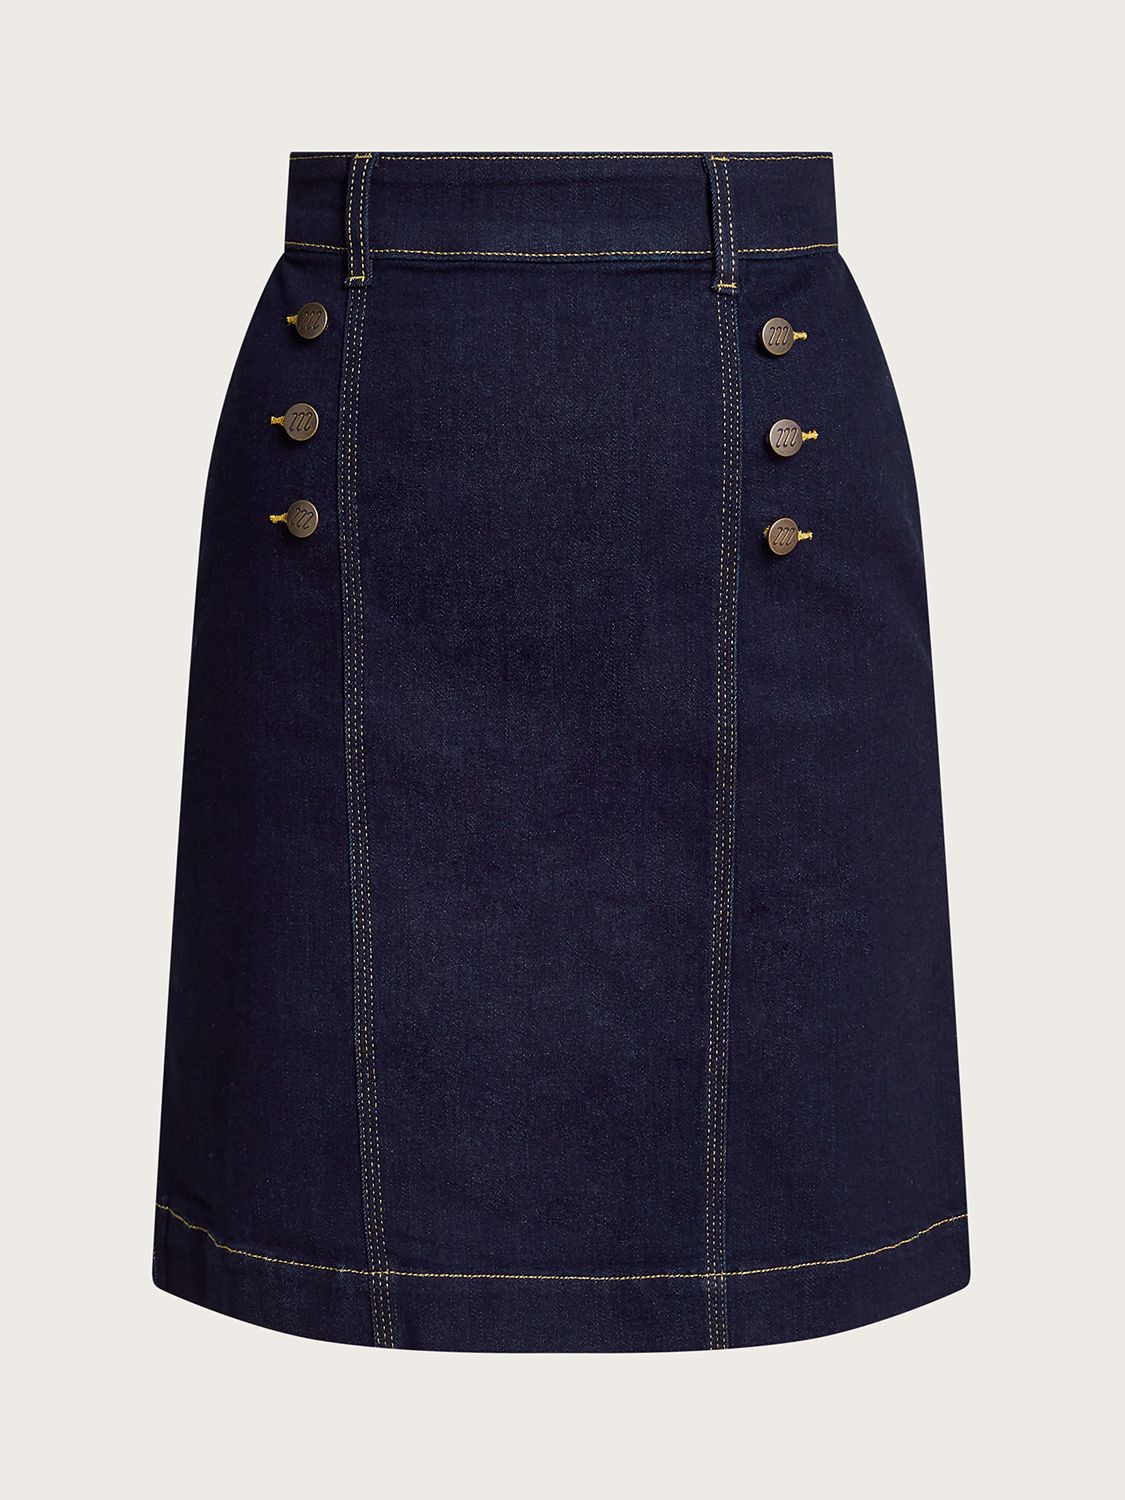 Monsoon Rosa Button Detail Mini Skirt, Indigo, 8